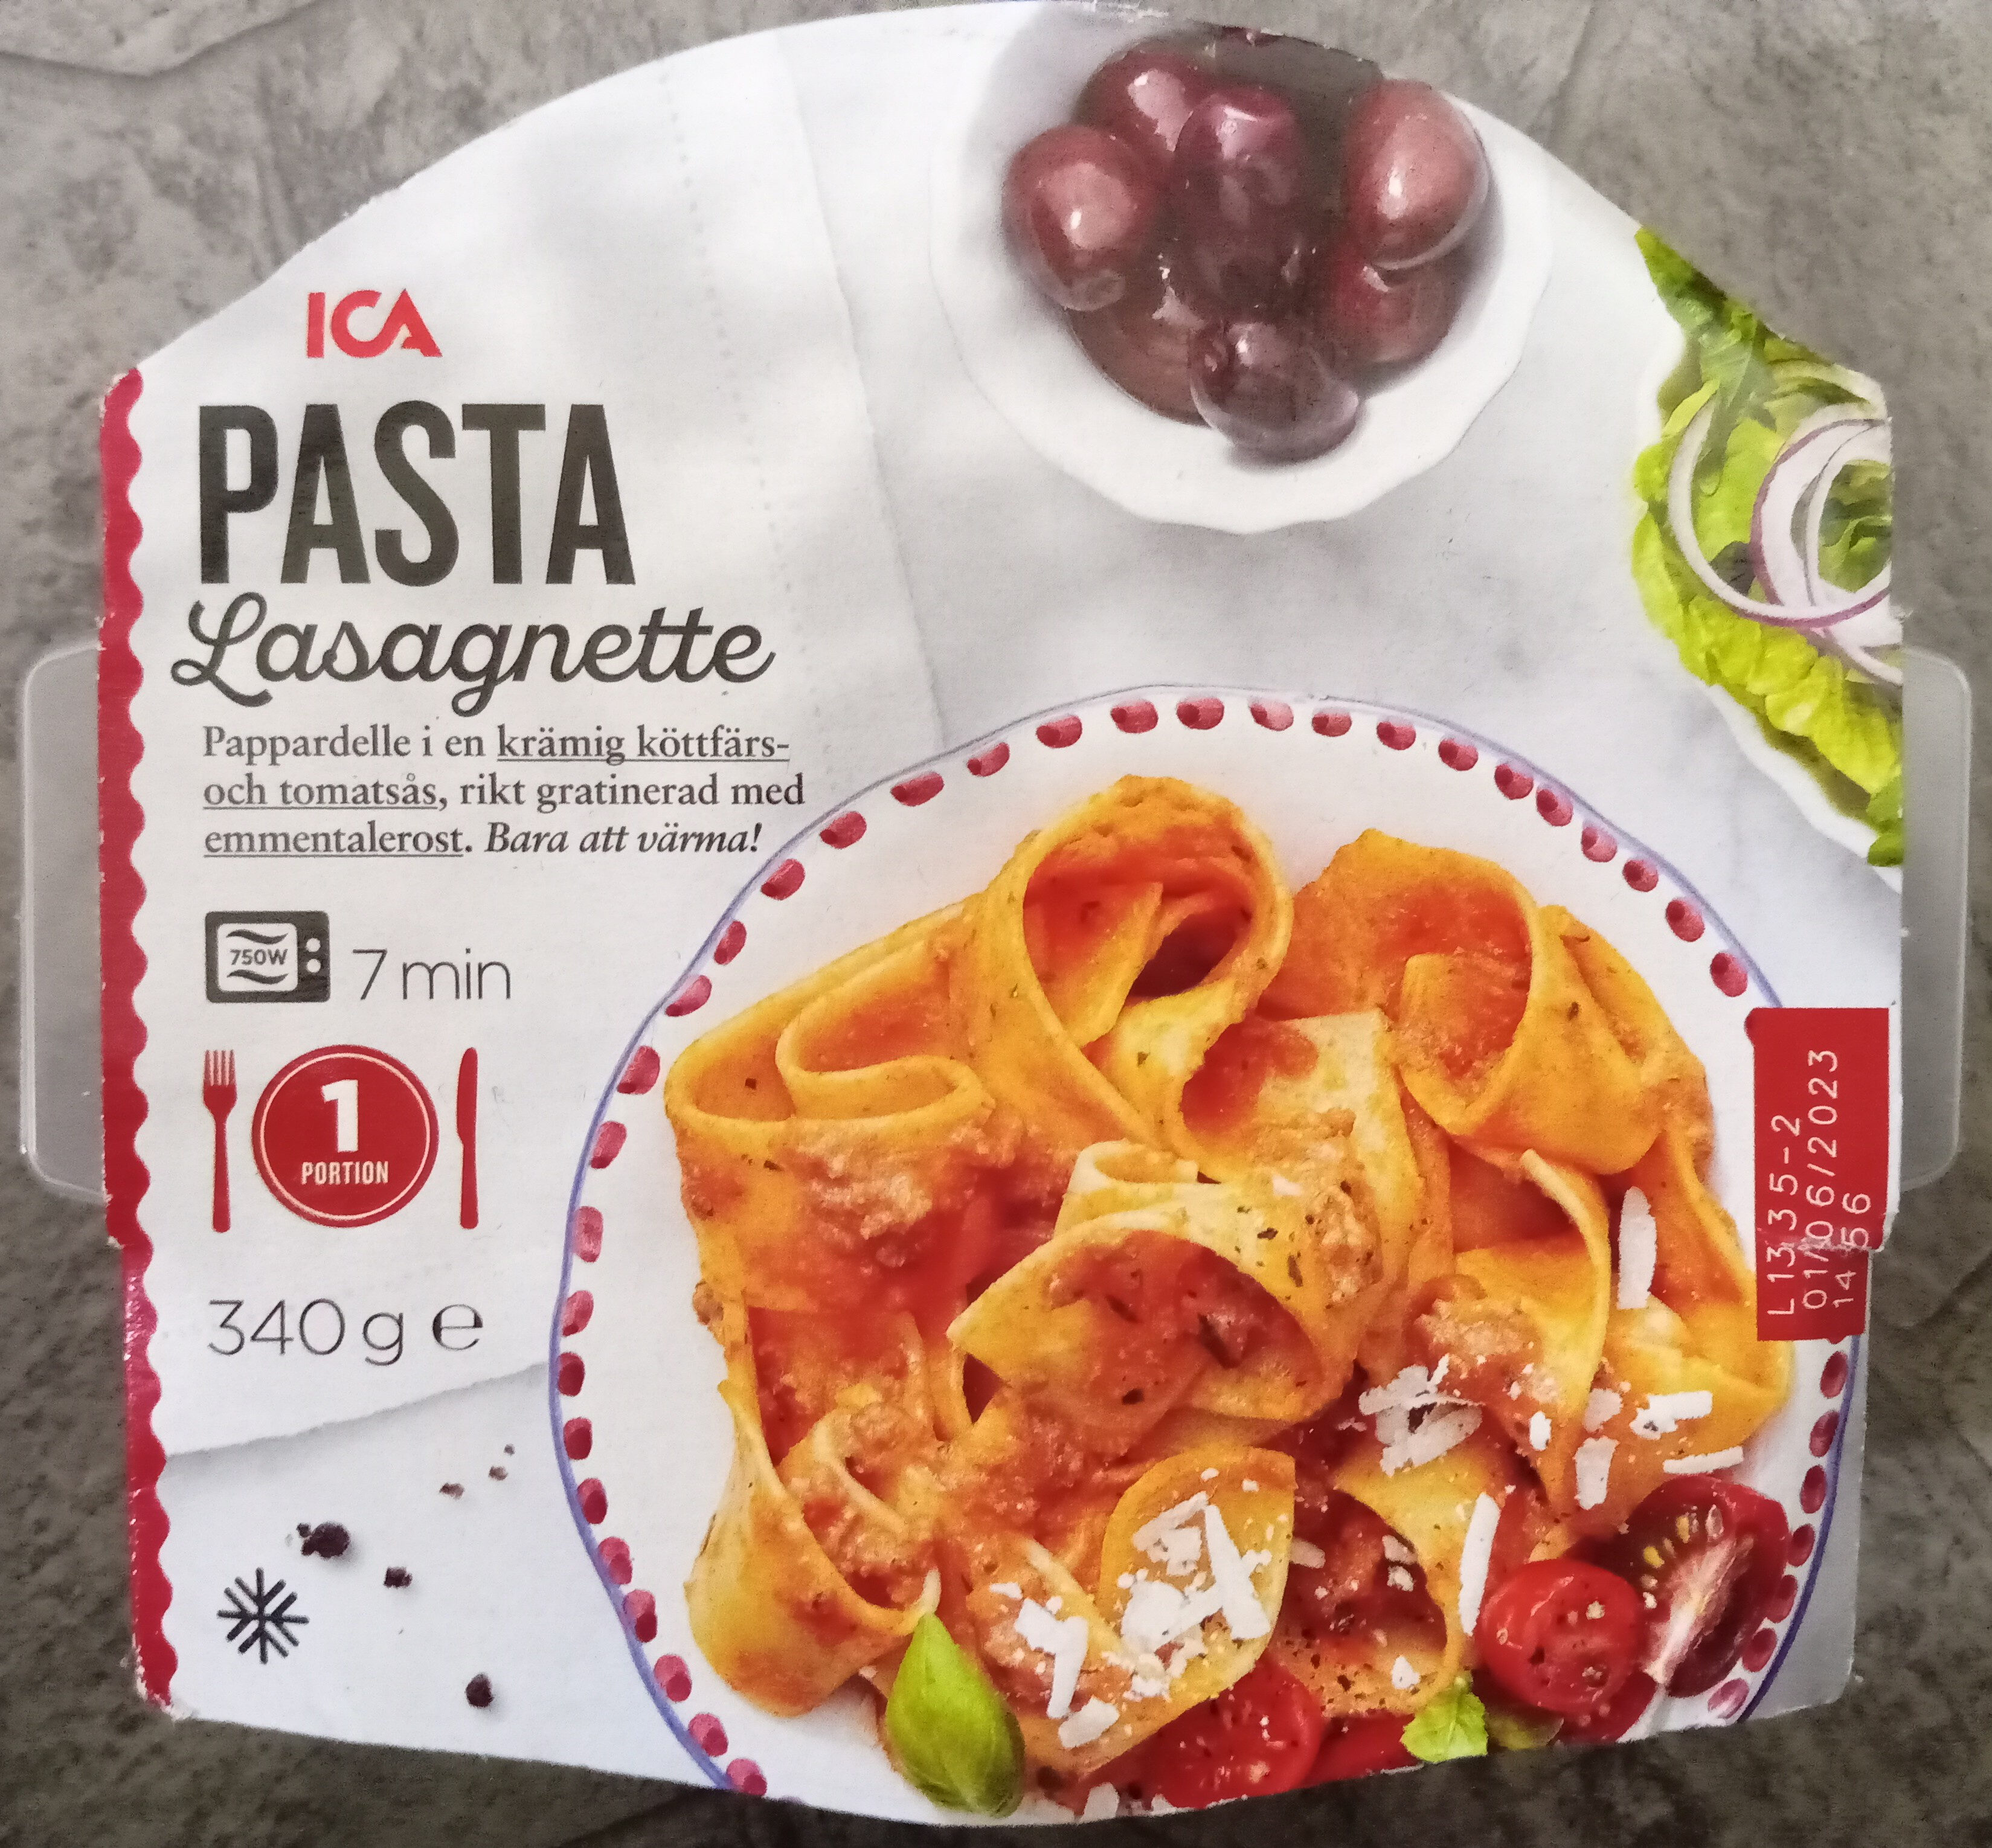 ICA Pasta Lasagnette - Produkt - sv